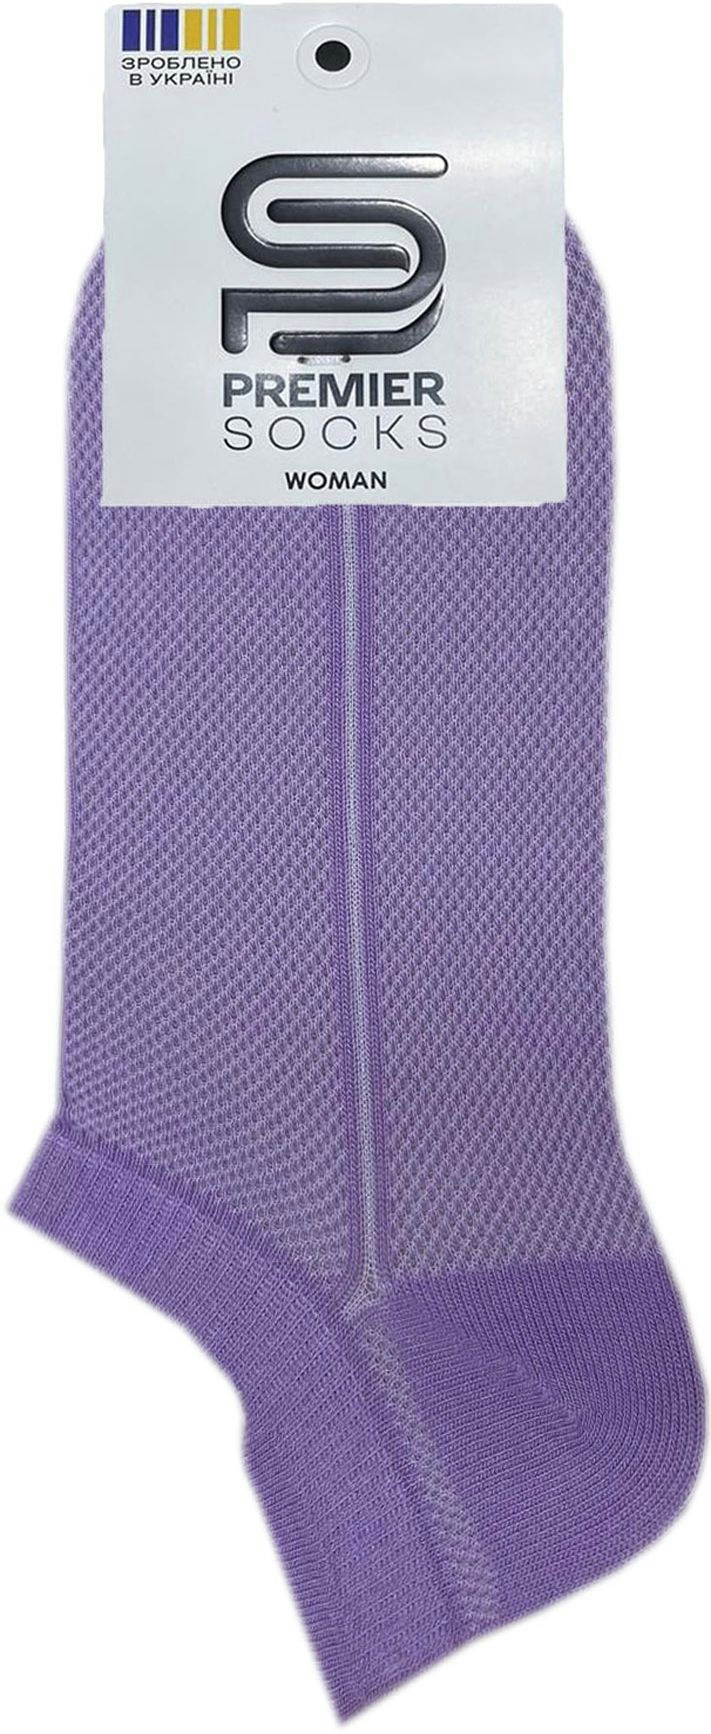 Шкарпетки жіночі Premier Socks 36-40 1 пара фіолетові (4820163318752)фото2